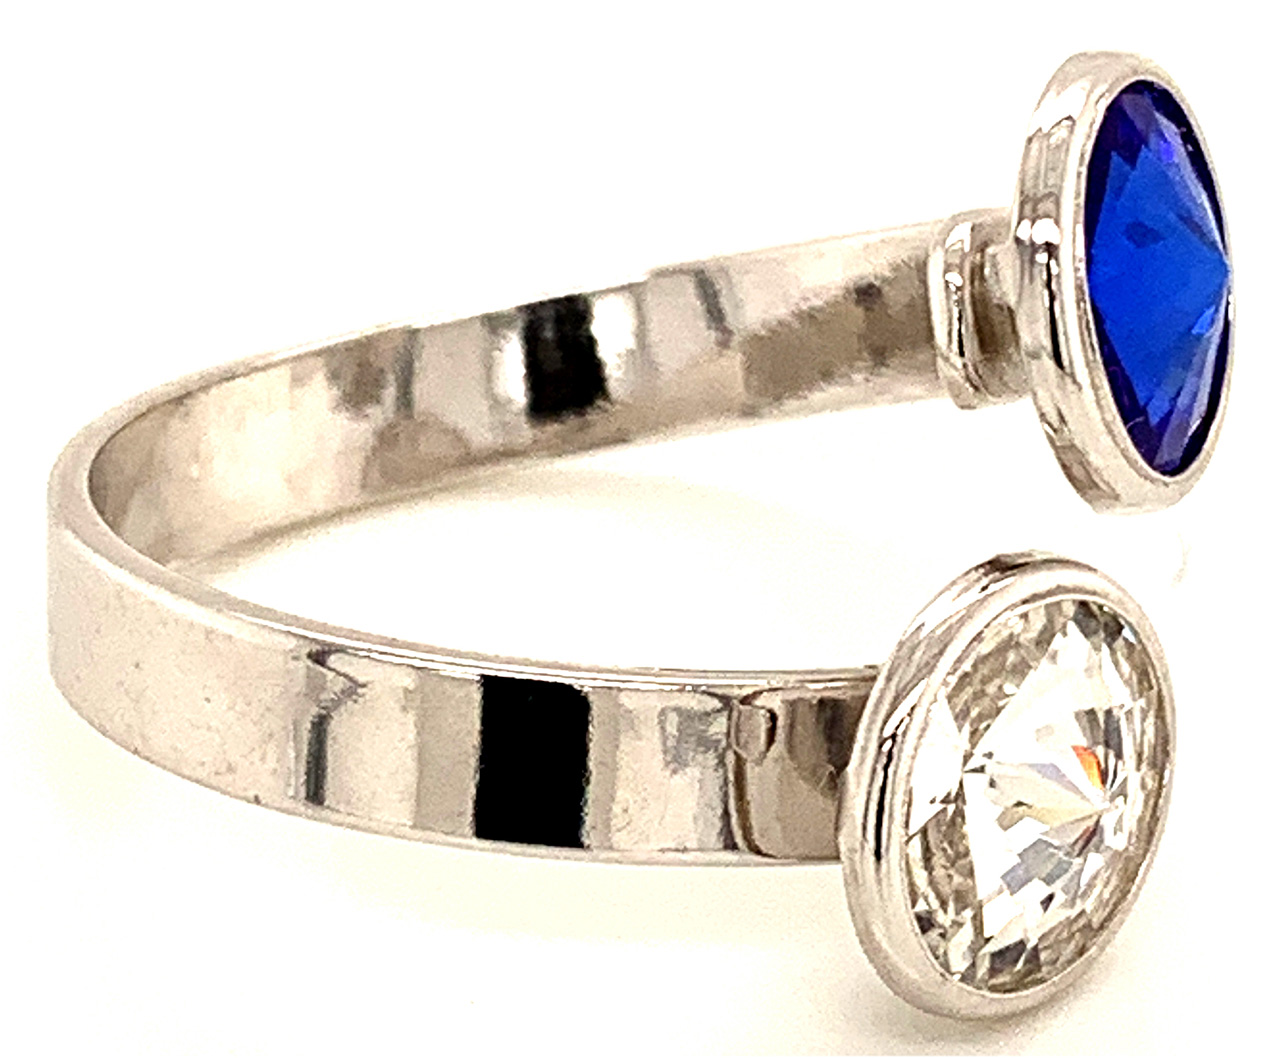 Silber Ring mit 2 Swarovski Crystal 1*Majestic Blue Blau 1*Crystal Clear 925 Silberfassung größe änderbar gesamt ca. 3,4 Gramm 17 ct handgearbeitet, rhodiniert, handgemacht in Italien AT0578MBC